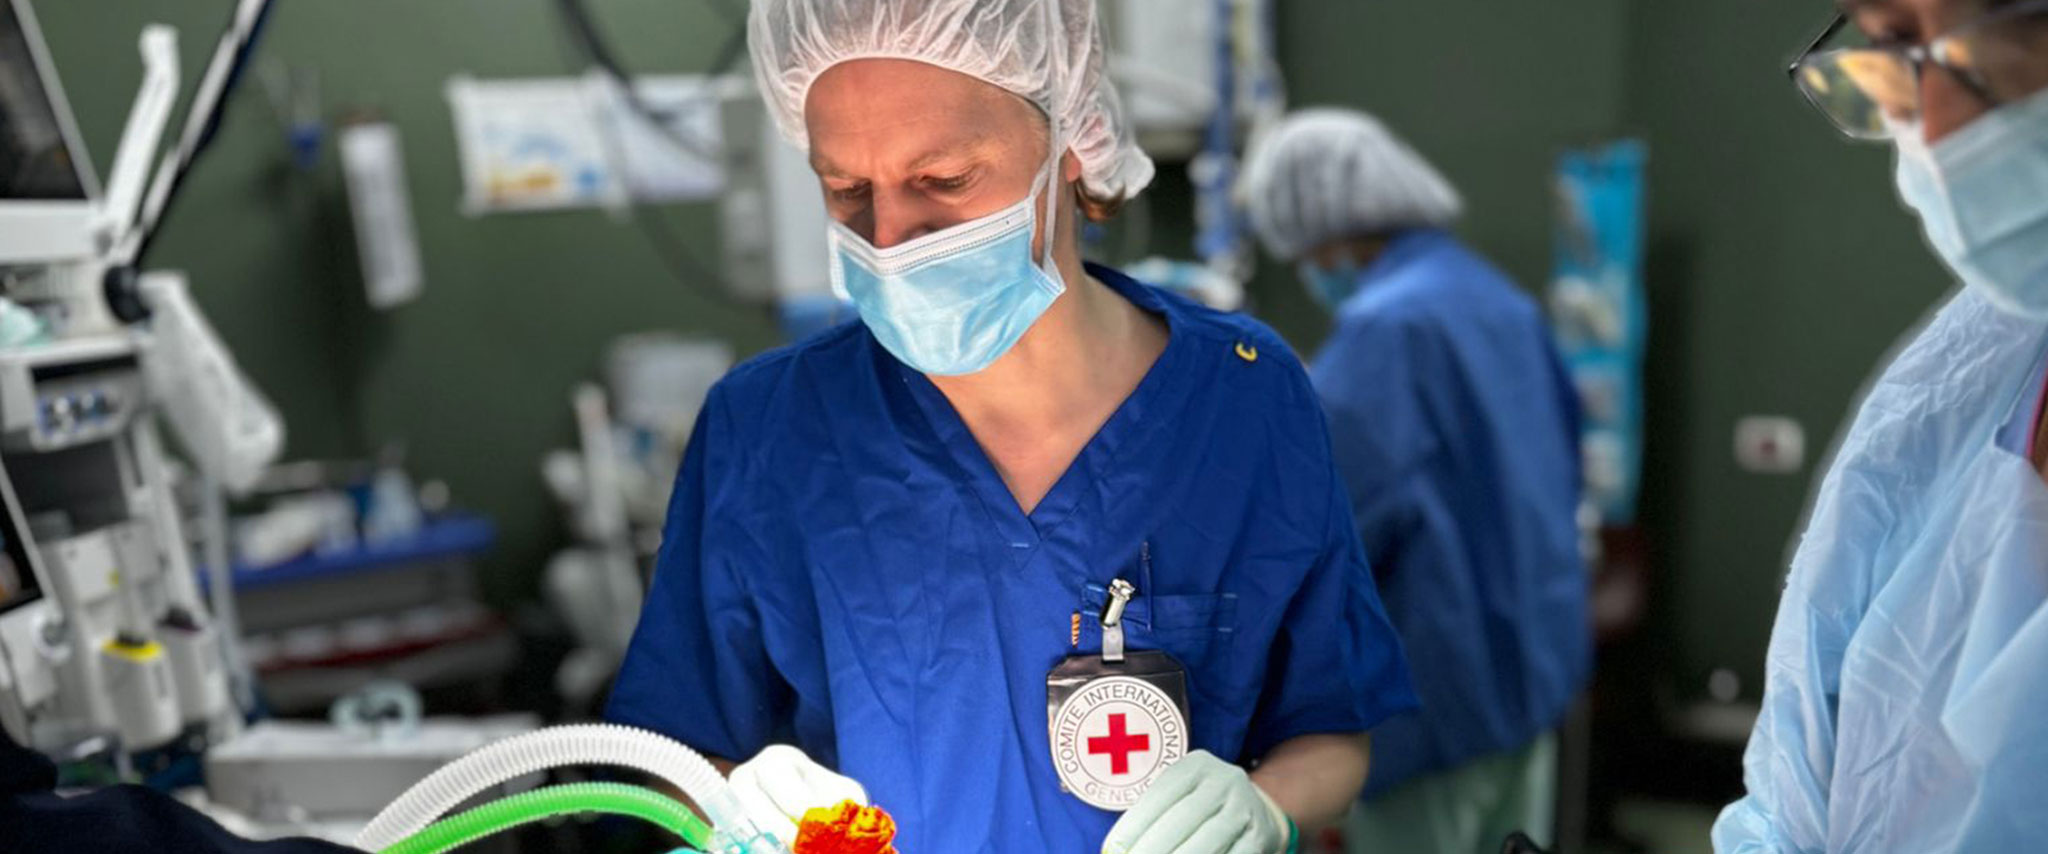 Bonner Arzt hilft verletzten Menschen im Gazastreifen